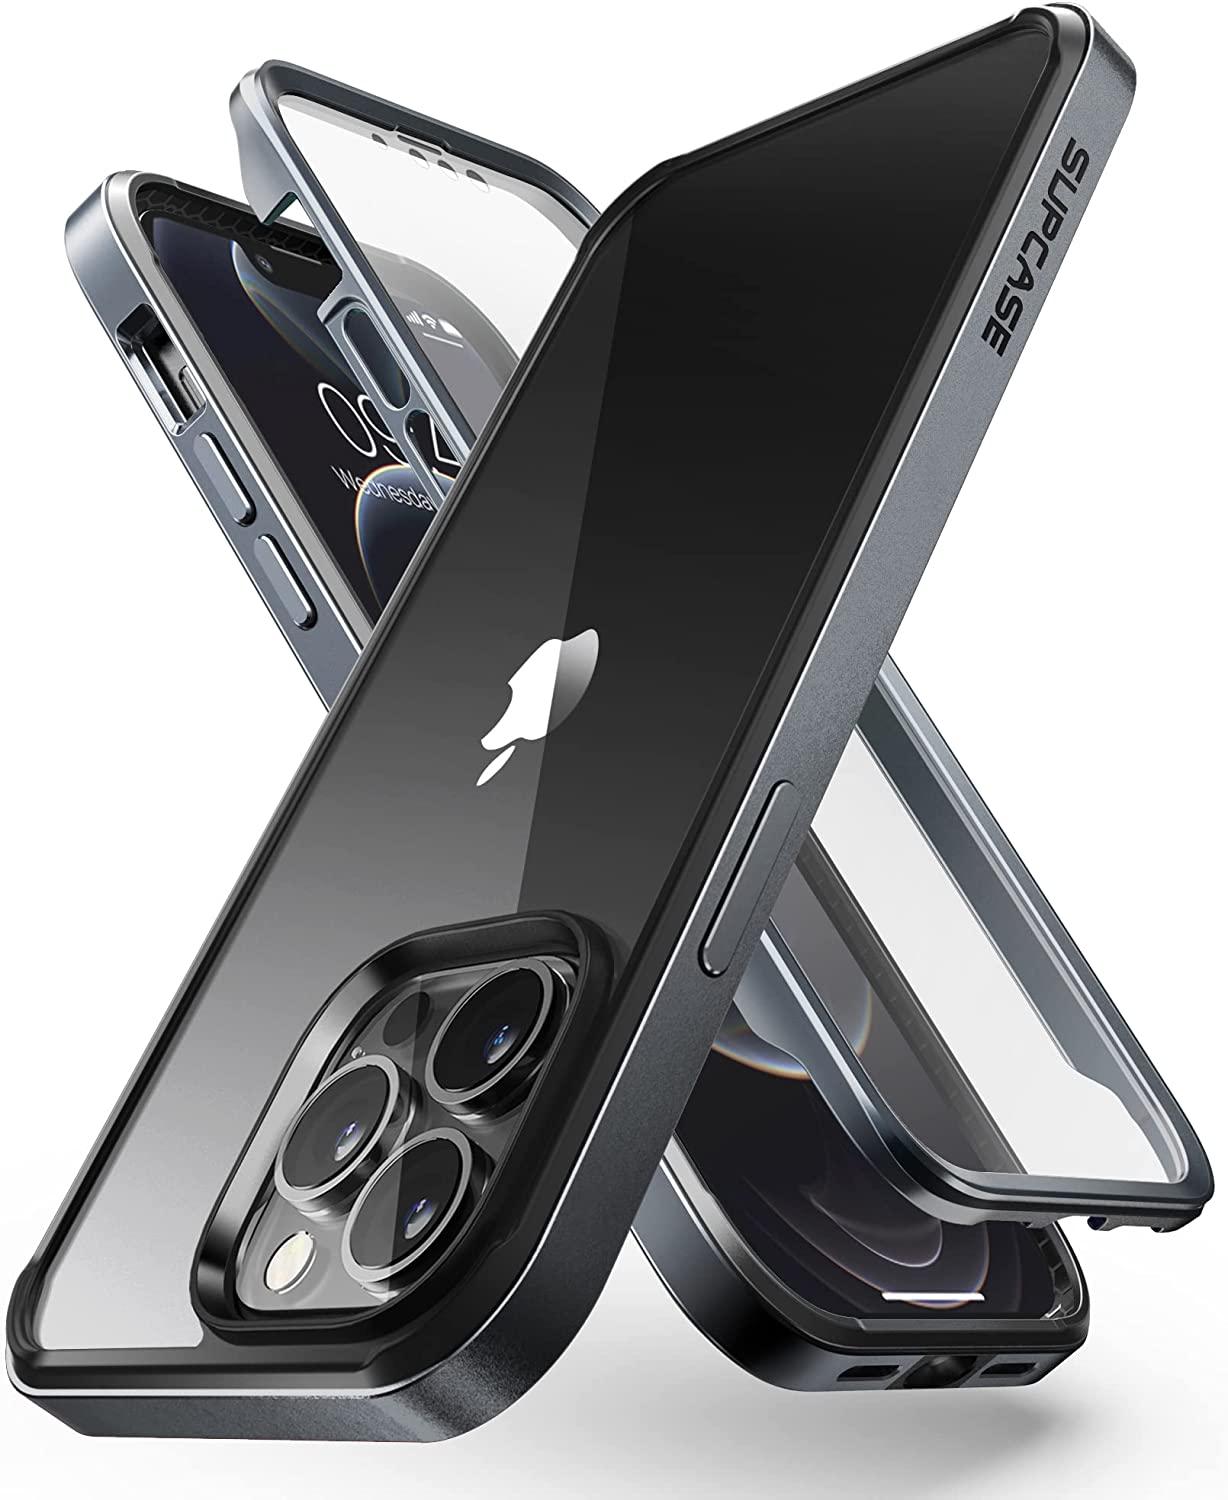 【日本代購】SUPCASE iPhone13Pro Max 手机壳 6.7英寸 2021 全面保护 美军MIL标准 耐冲击 薄型 带保护膜 保护镜片 一体感 贴合感 背面透明 轻量 可无线充电 EdgePro系列